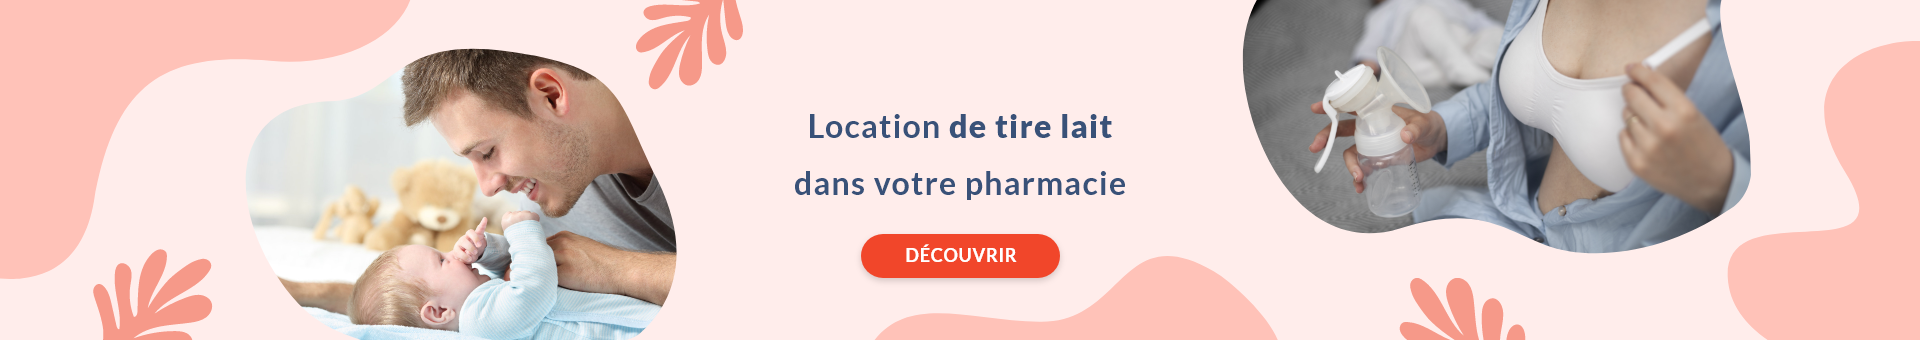 Pharmacie de La Muette,Garges-lès-Gonesse